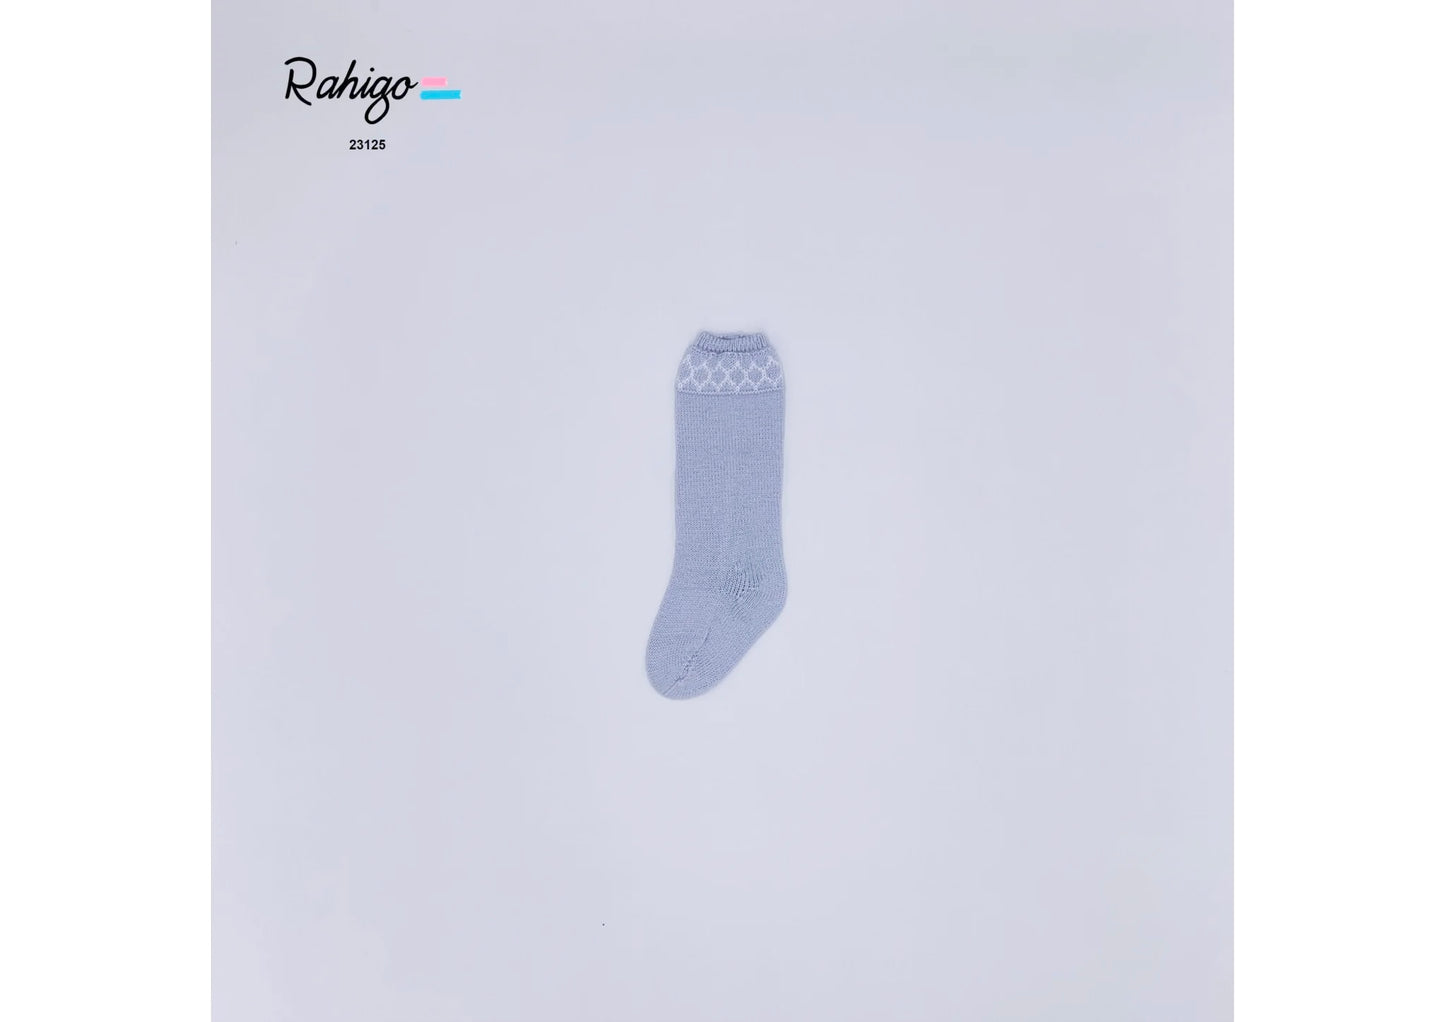 Rahigo Blue & White Knit Socks